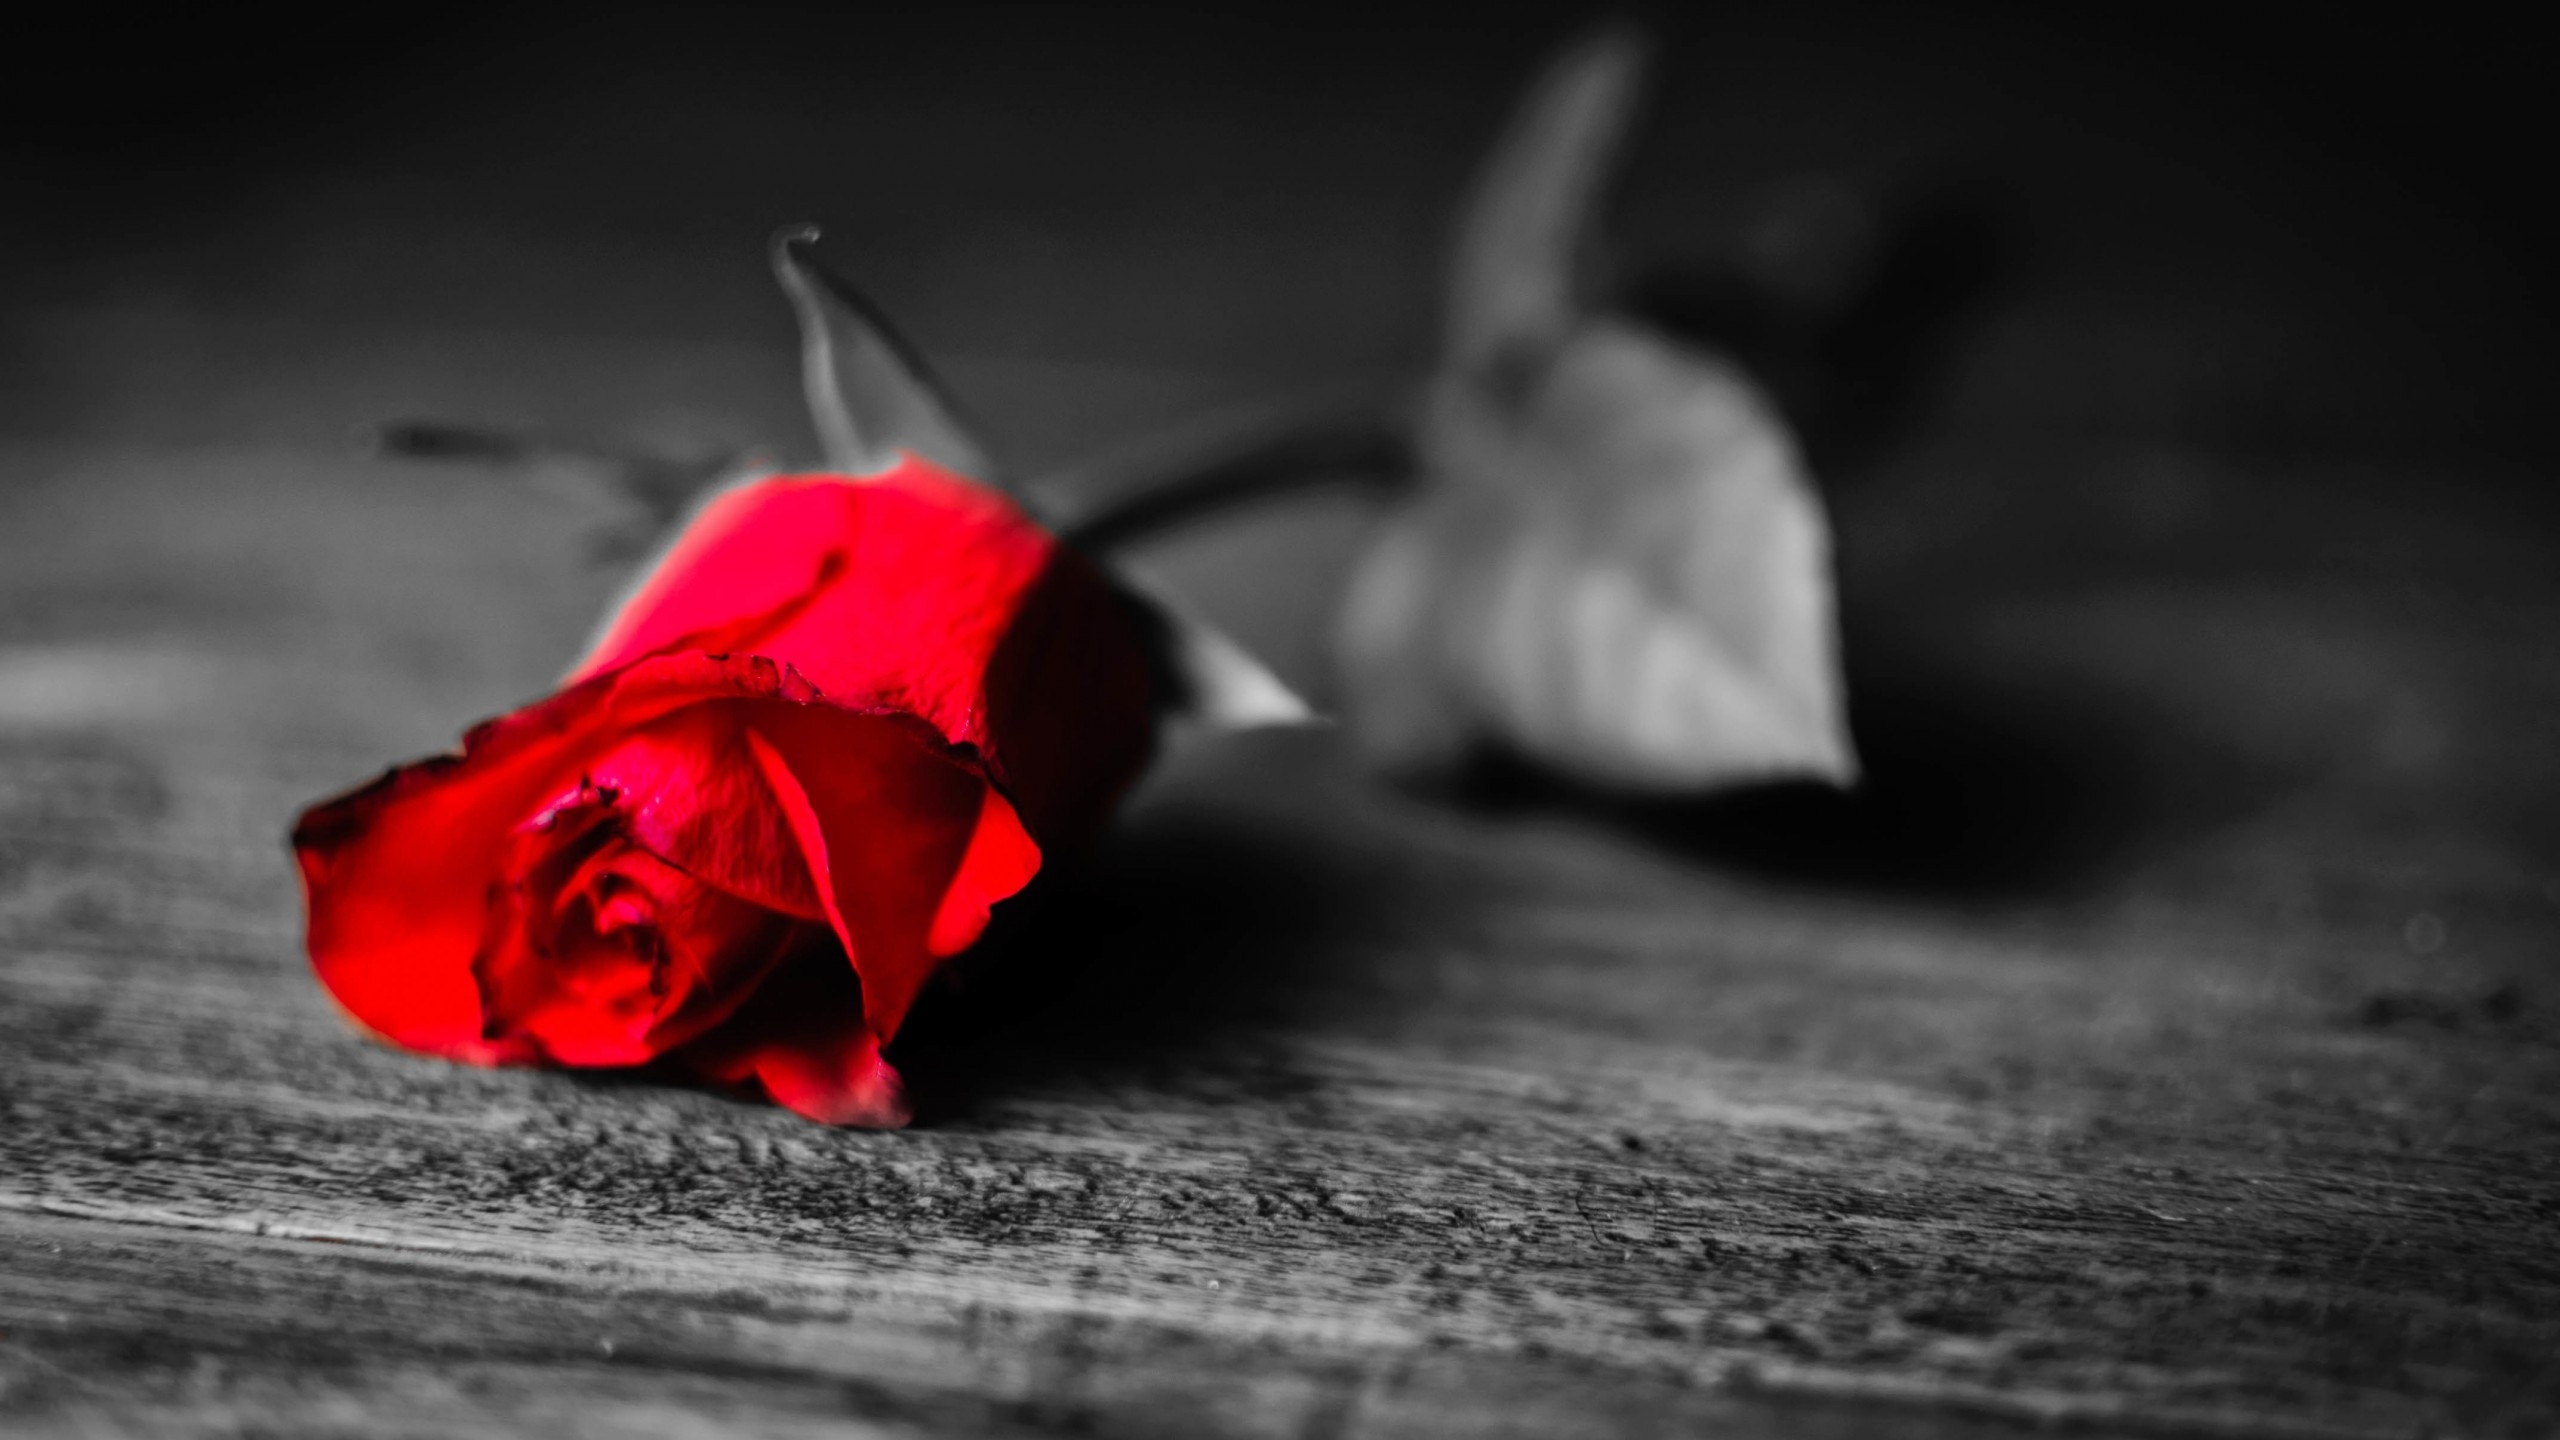 Red Rose Flower for 2560x1440 HDTV resolution